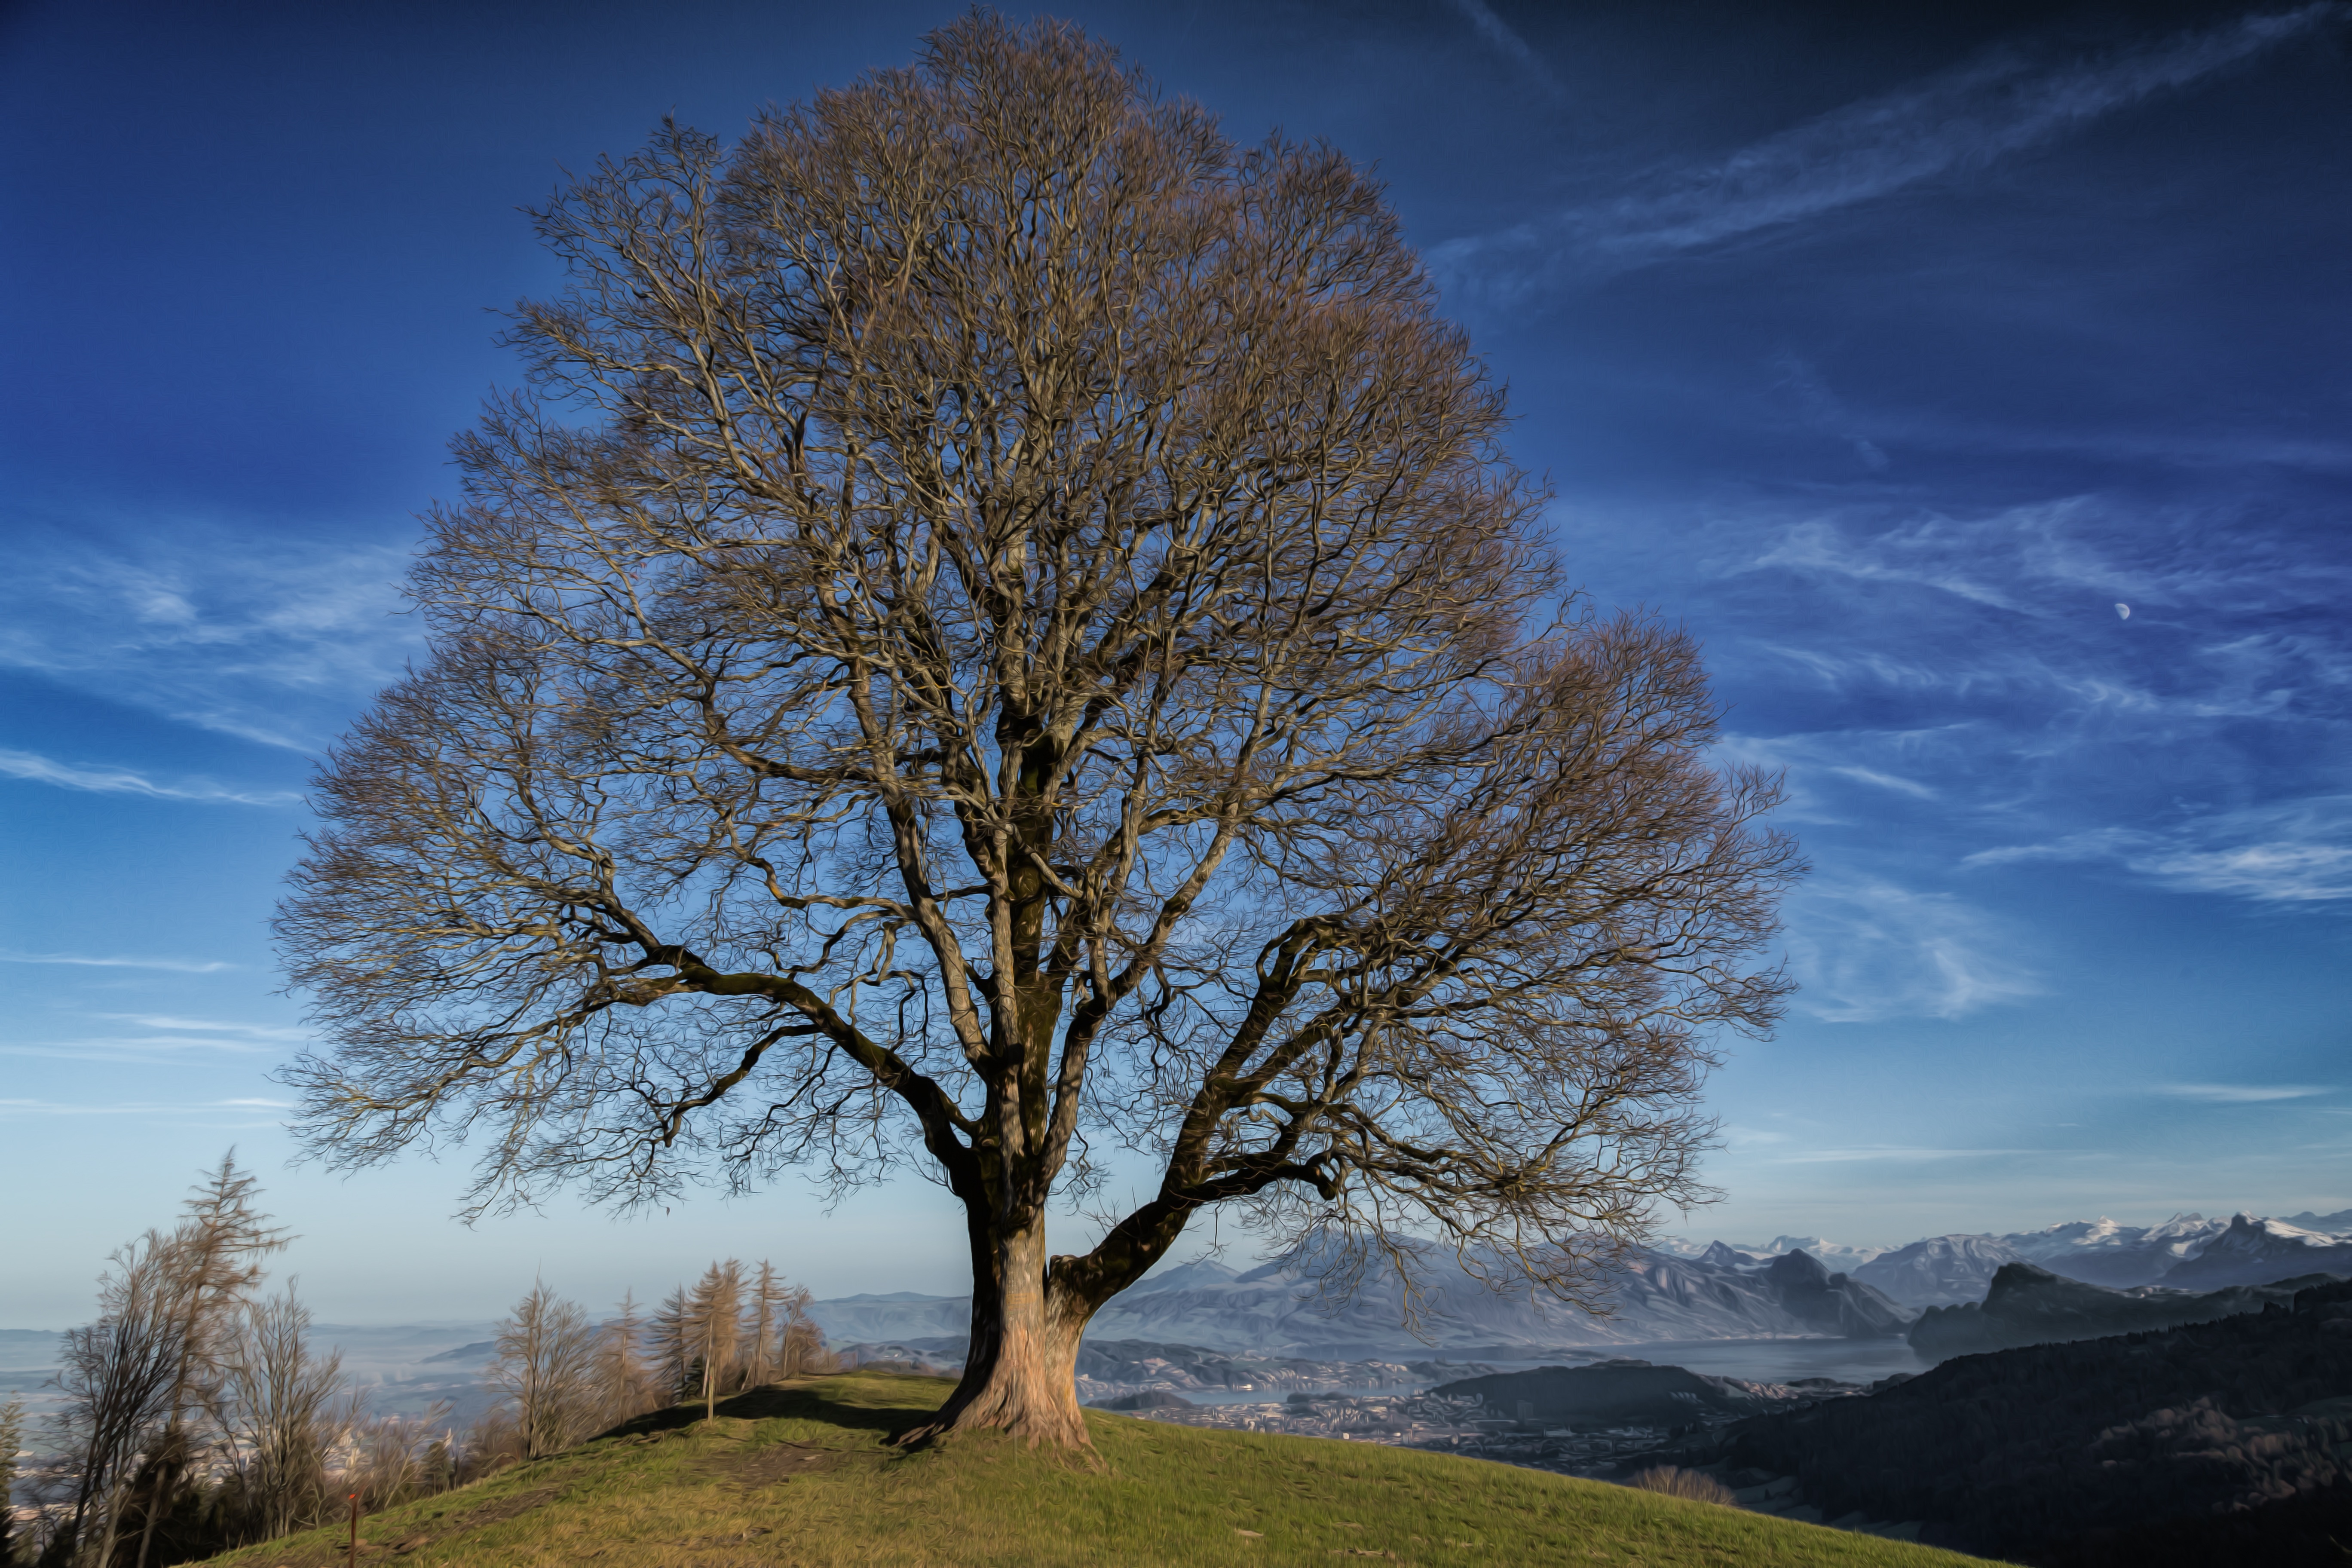 Lone tree in Switzerland by Boenz